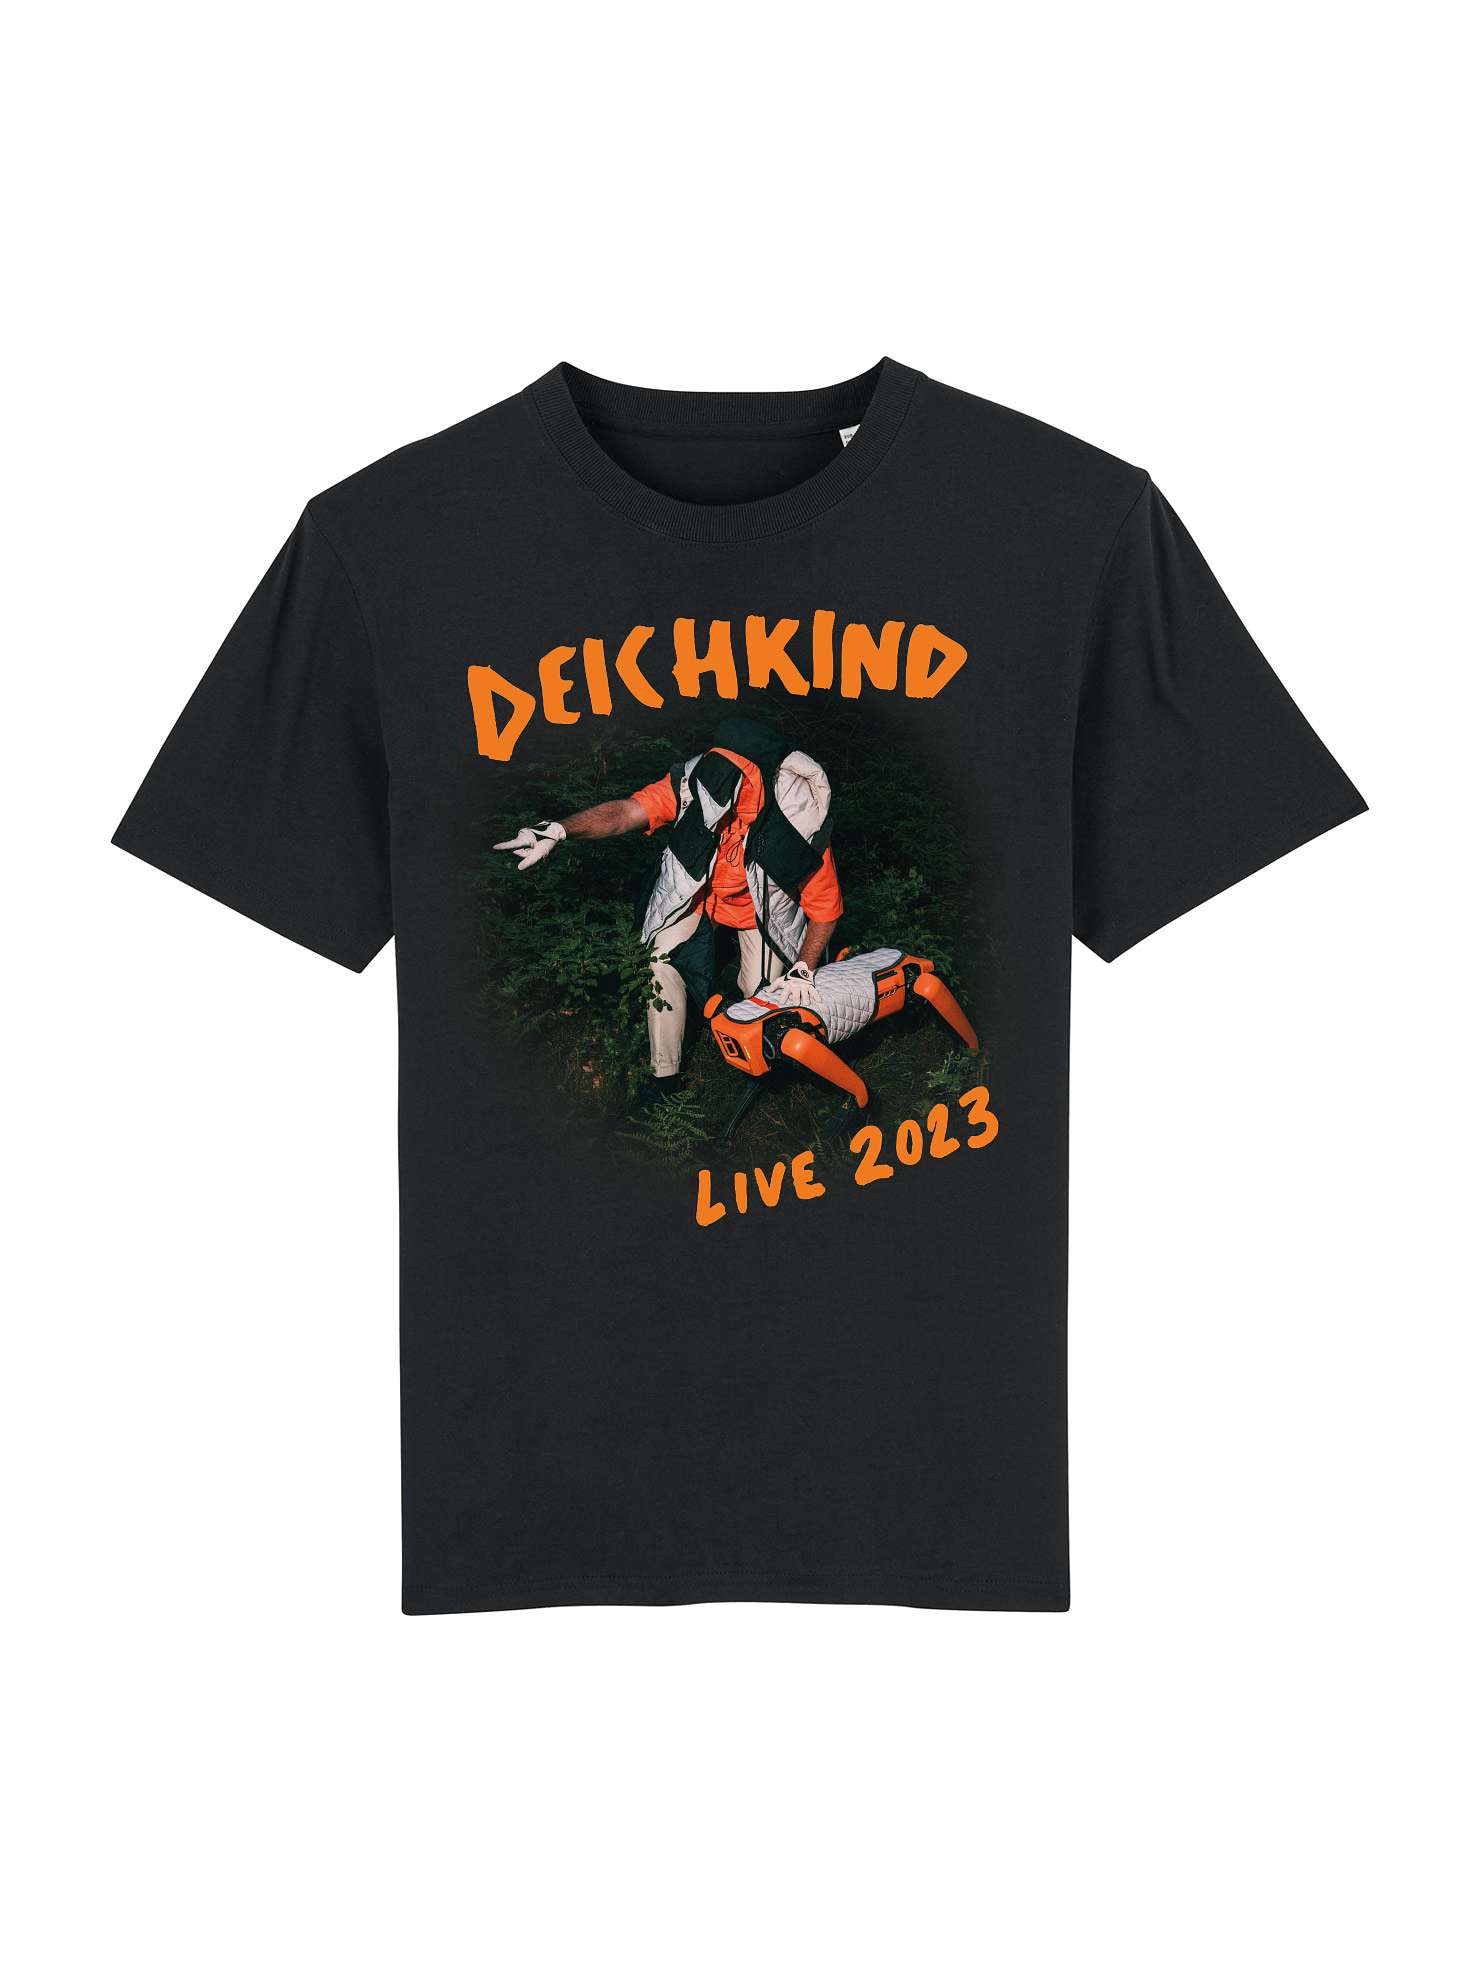 DEICHKIND - T-Shirt - Dauerzustand - Schwarz Neues Vom Tour